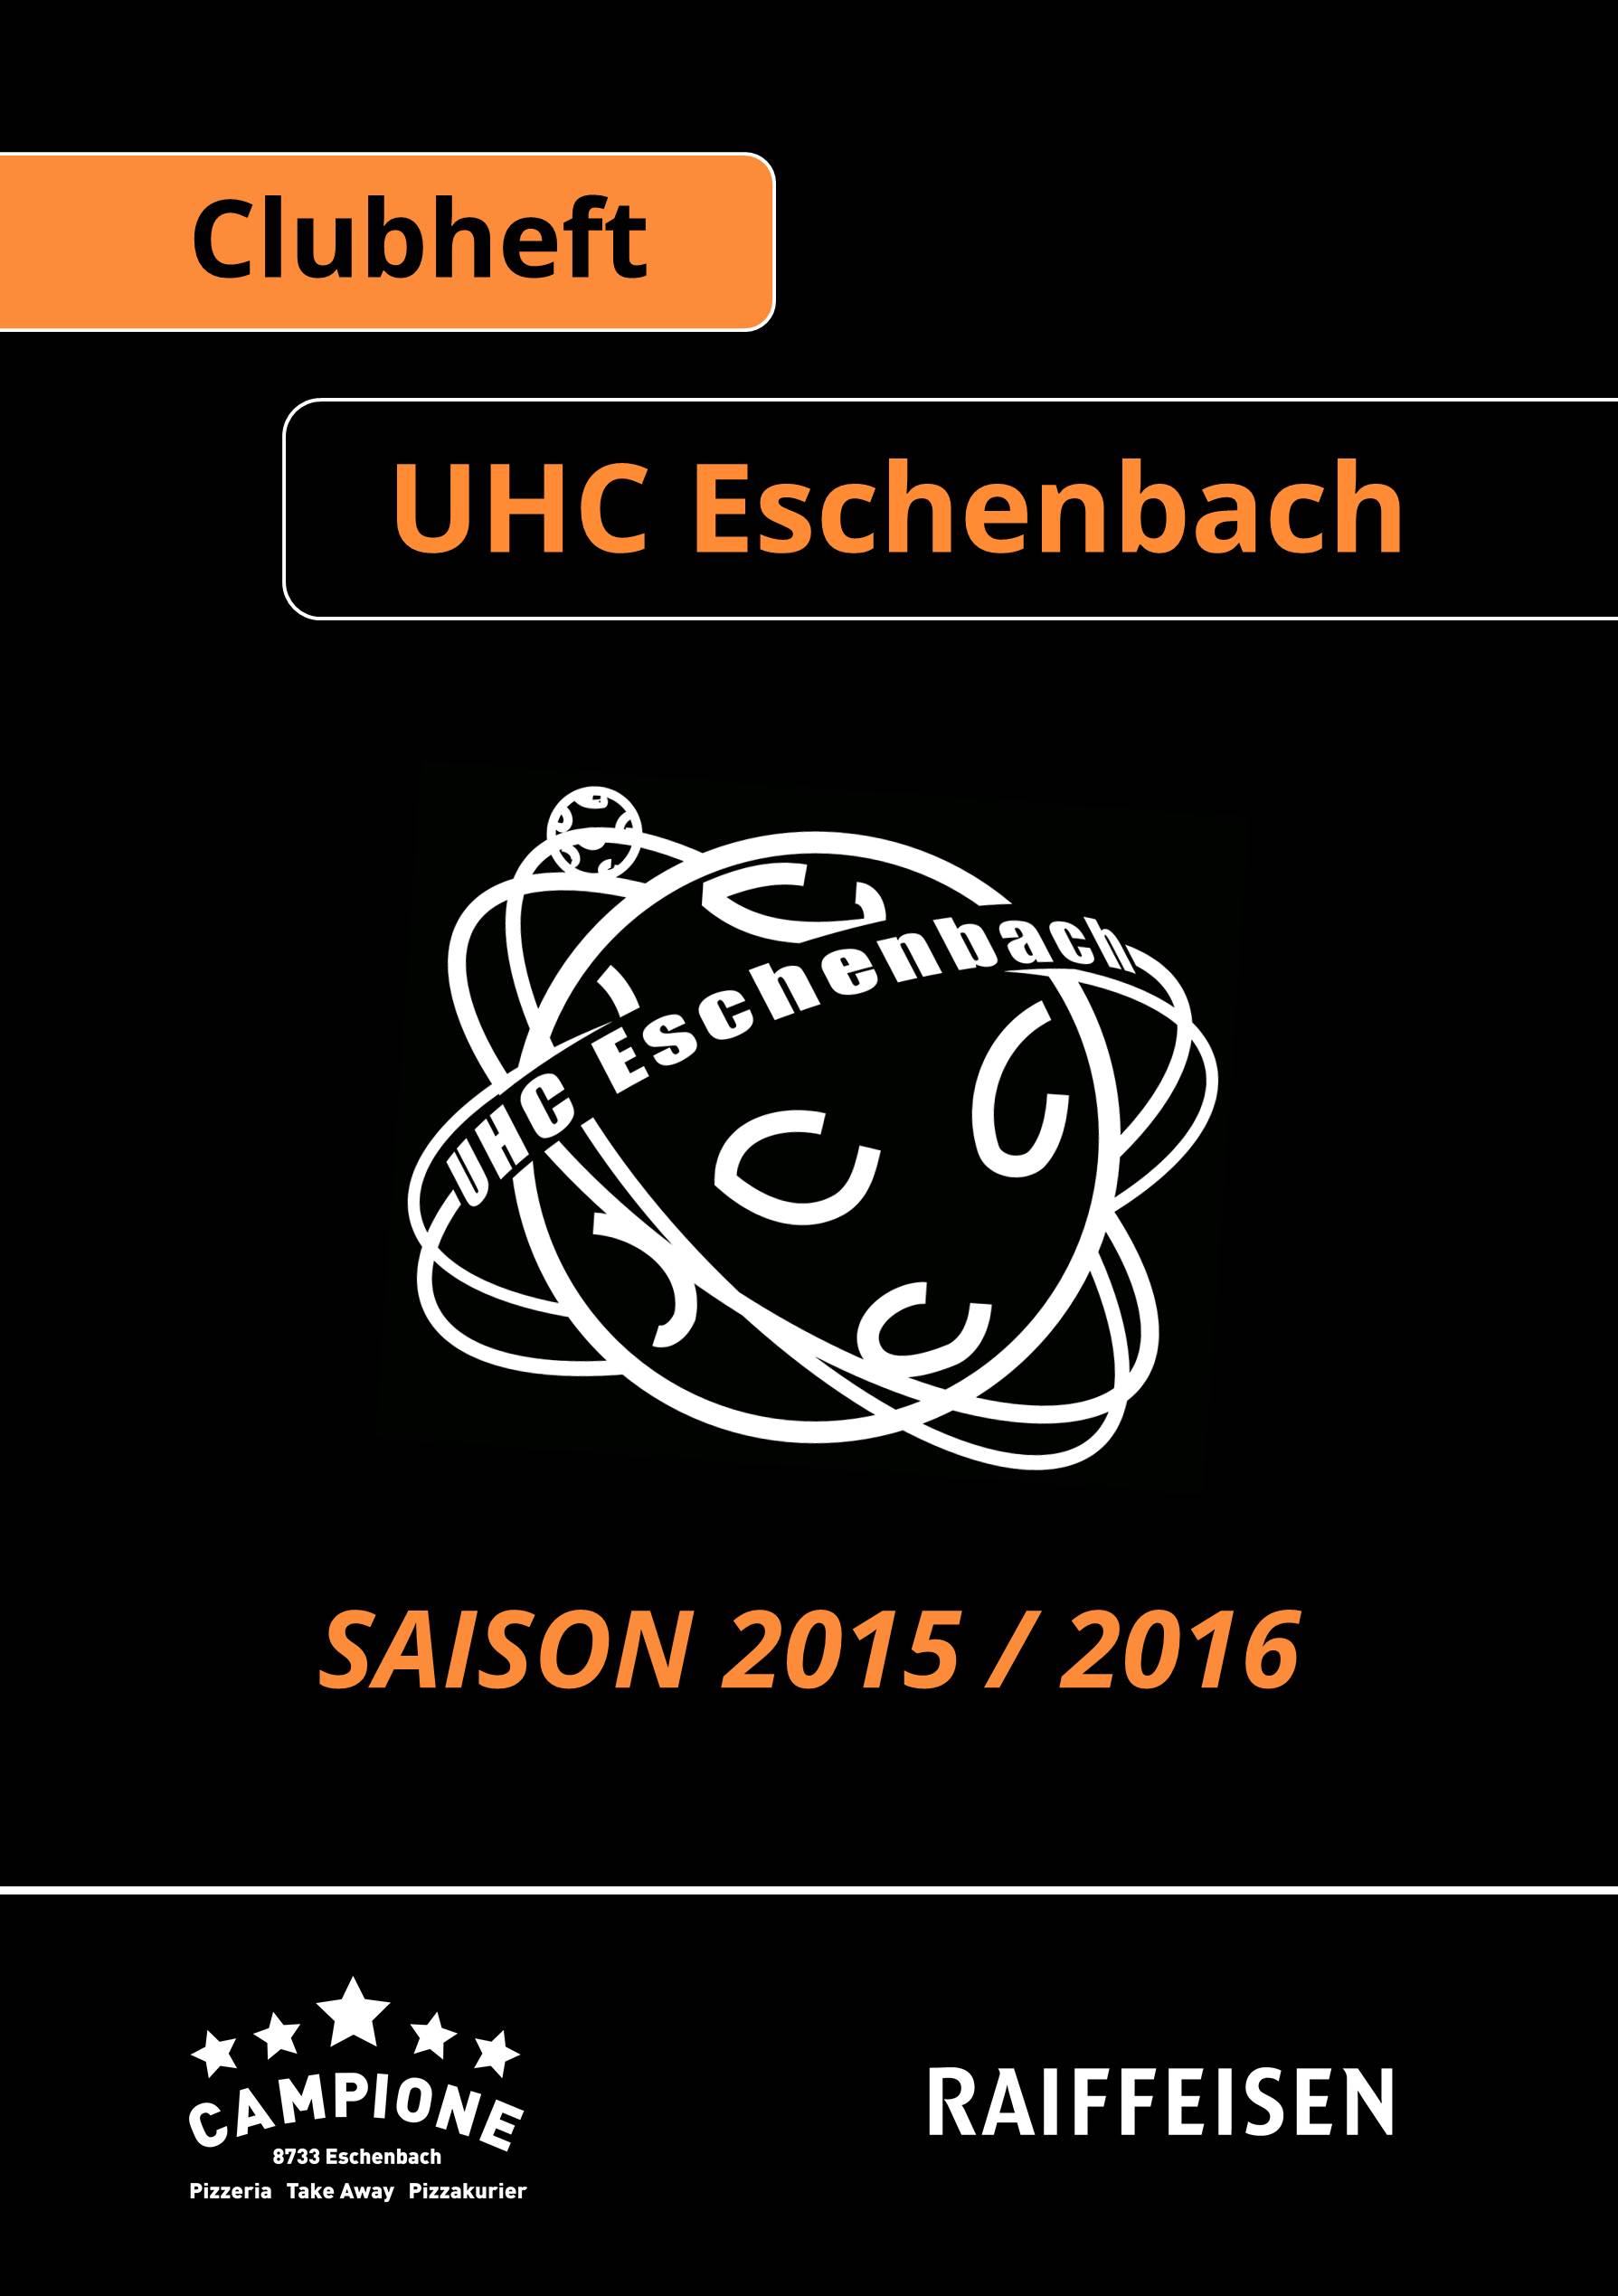 Clubheft Saison 2015/2016